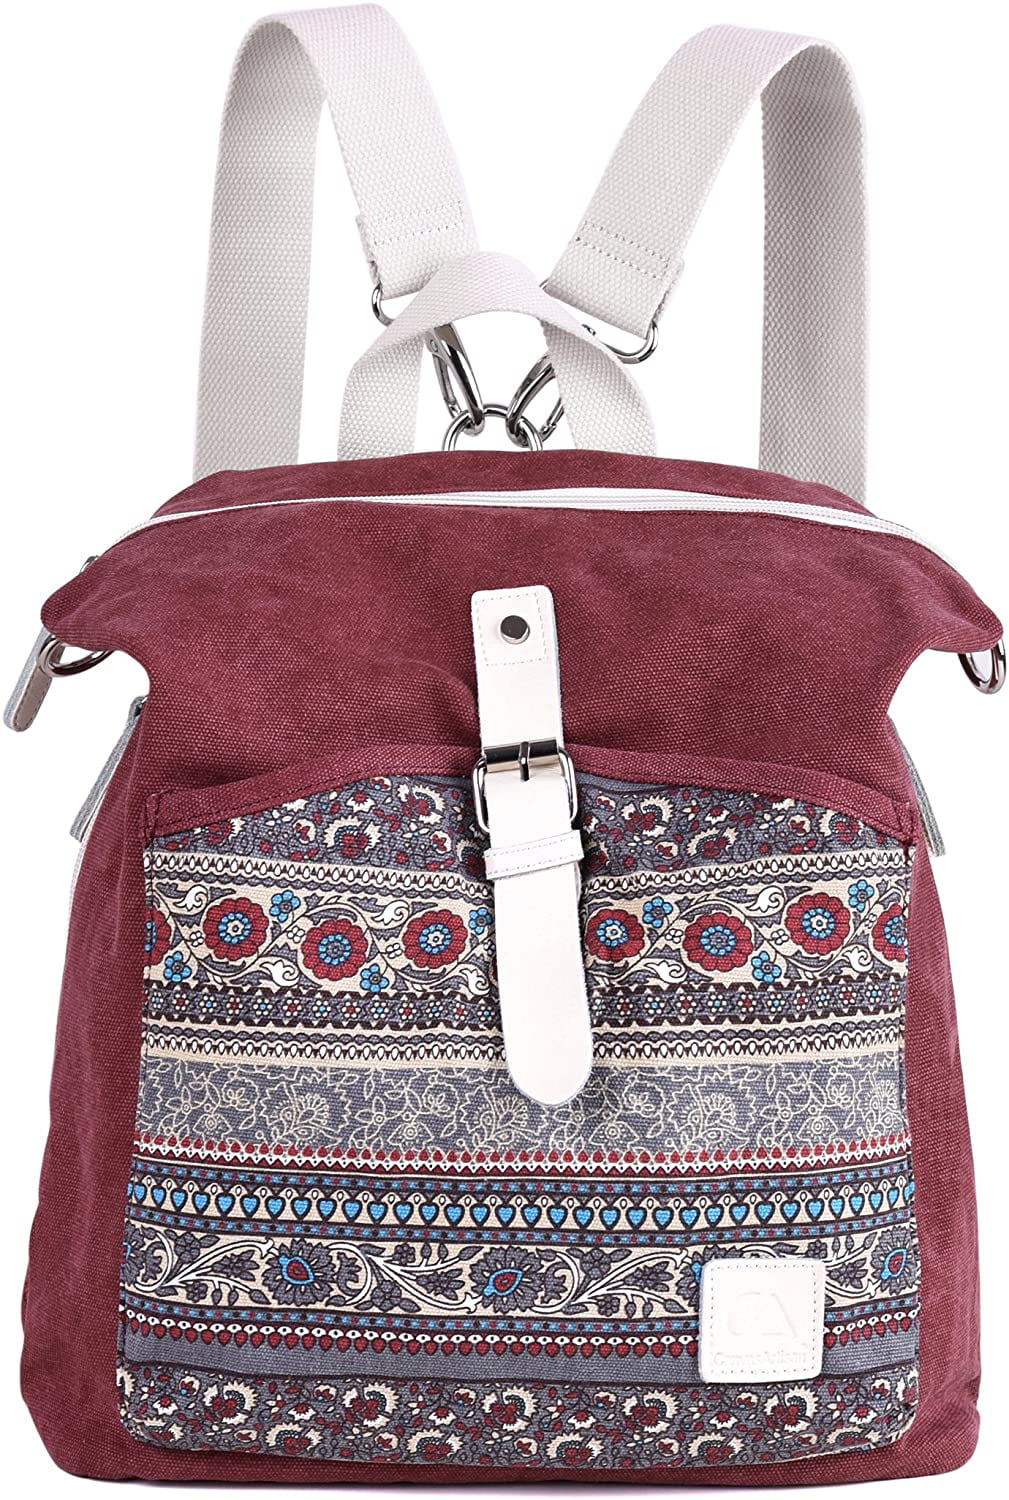 Asge Women Girl Backpack Canvas Rucksack Shoulder Bag - Walmart.com